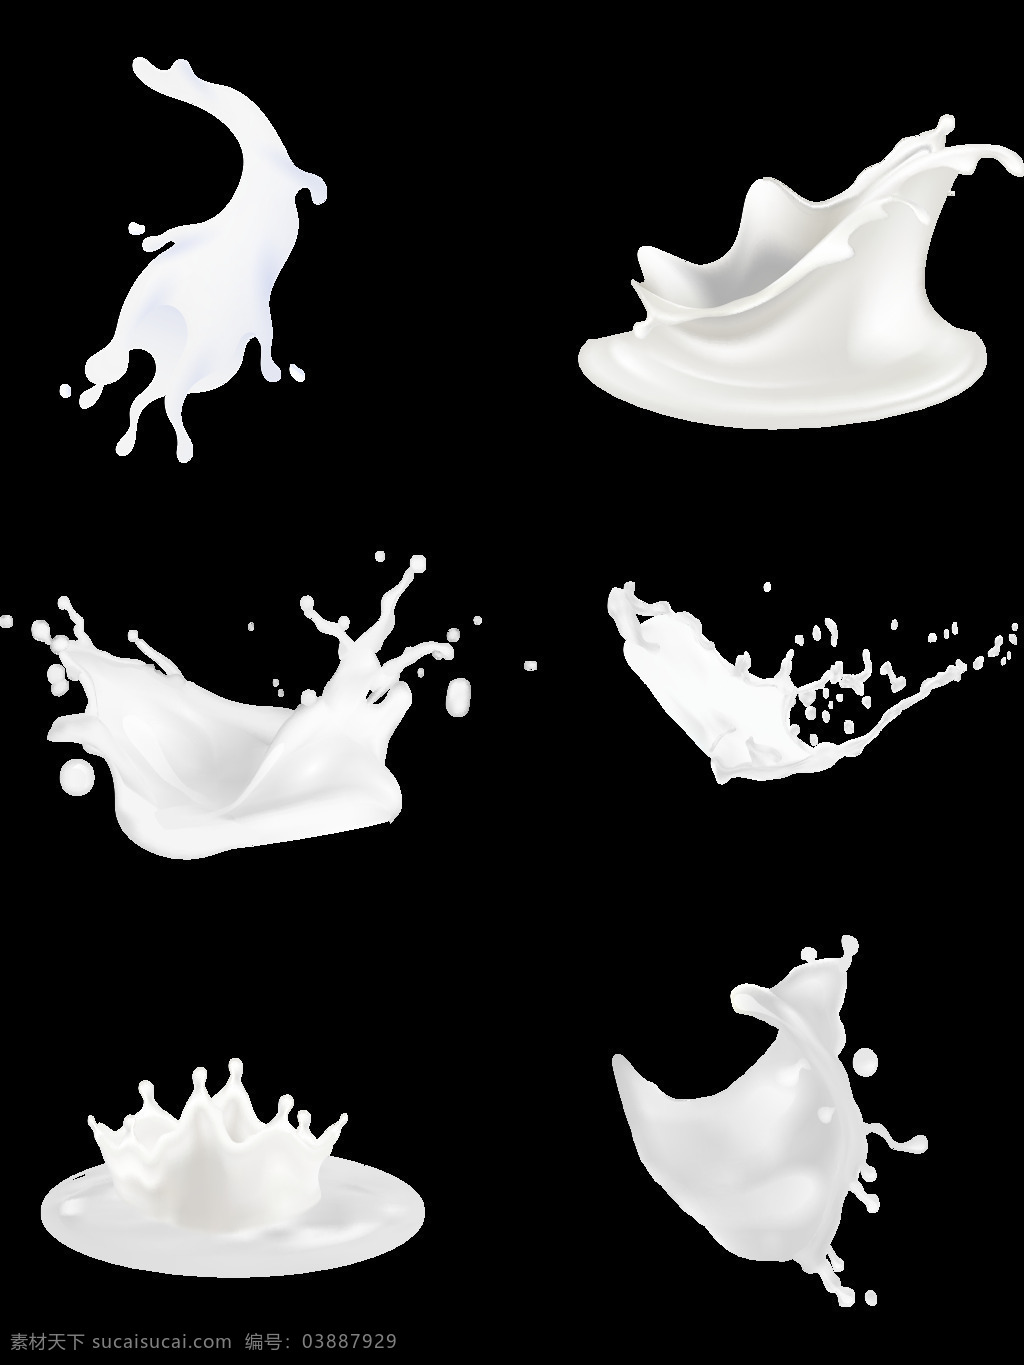 喷溅 白色 牛奶 元素 水花 盒装牛奶 白色牛奶 奶牛 蓝色盒子牛奶 milk 杯子 豆奶 喷溅的牛奶 早餐 营养 食物 创意 广告 背景素材 海报素材 餐饮美食 传统美食 奶茶 水果汁系列 牛奶飞溅素材